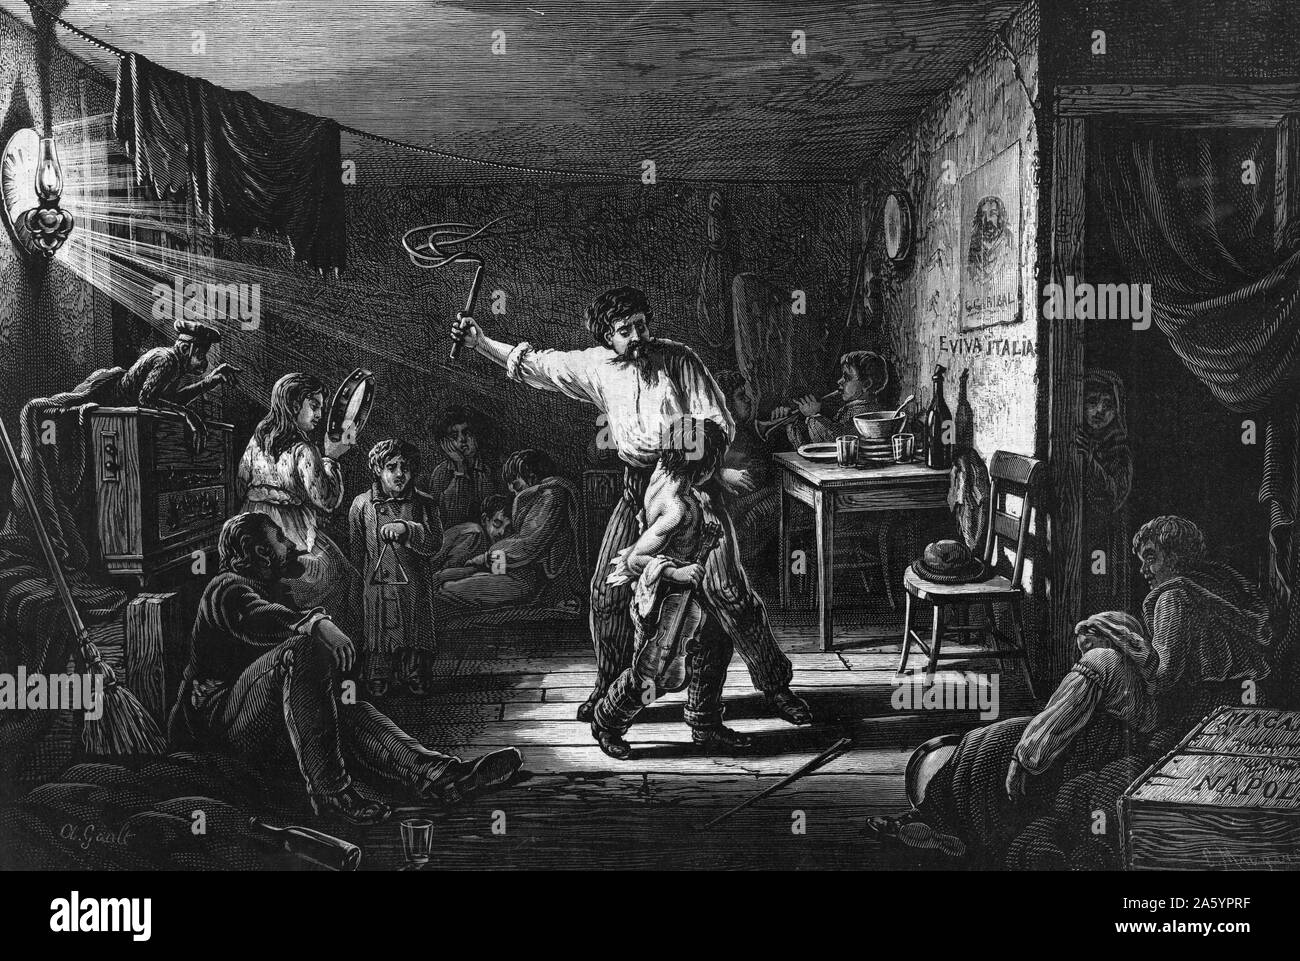 Die italienischen Jungen in New York - Qualen der Trainingsraum. Druck zeigt einen italienischen jungen, gepeitscht von seinem Chef in einem kleinen Raum voller Kinder Musizieren. 1879. Stockfoto